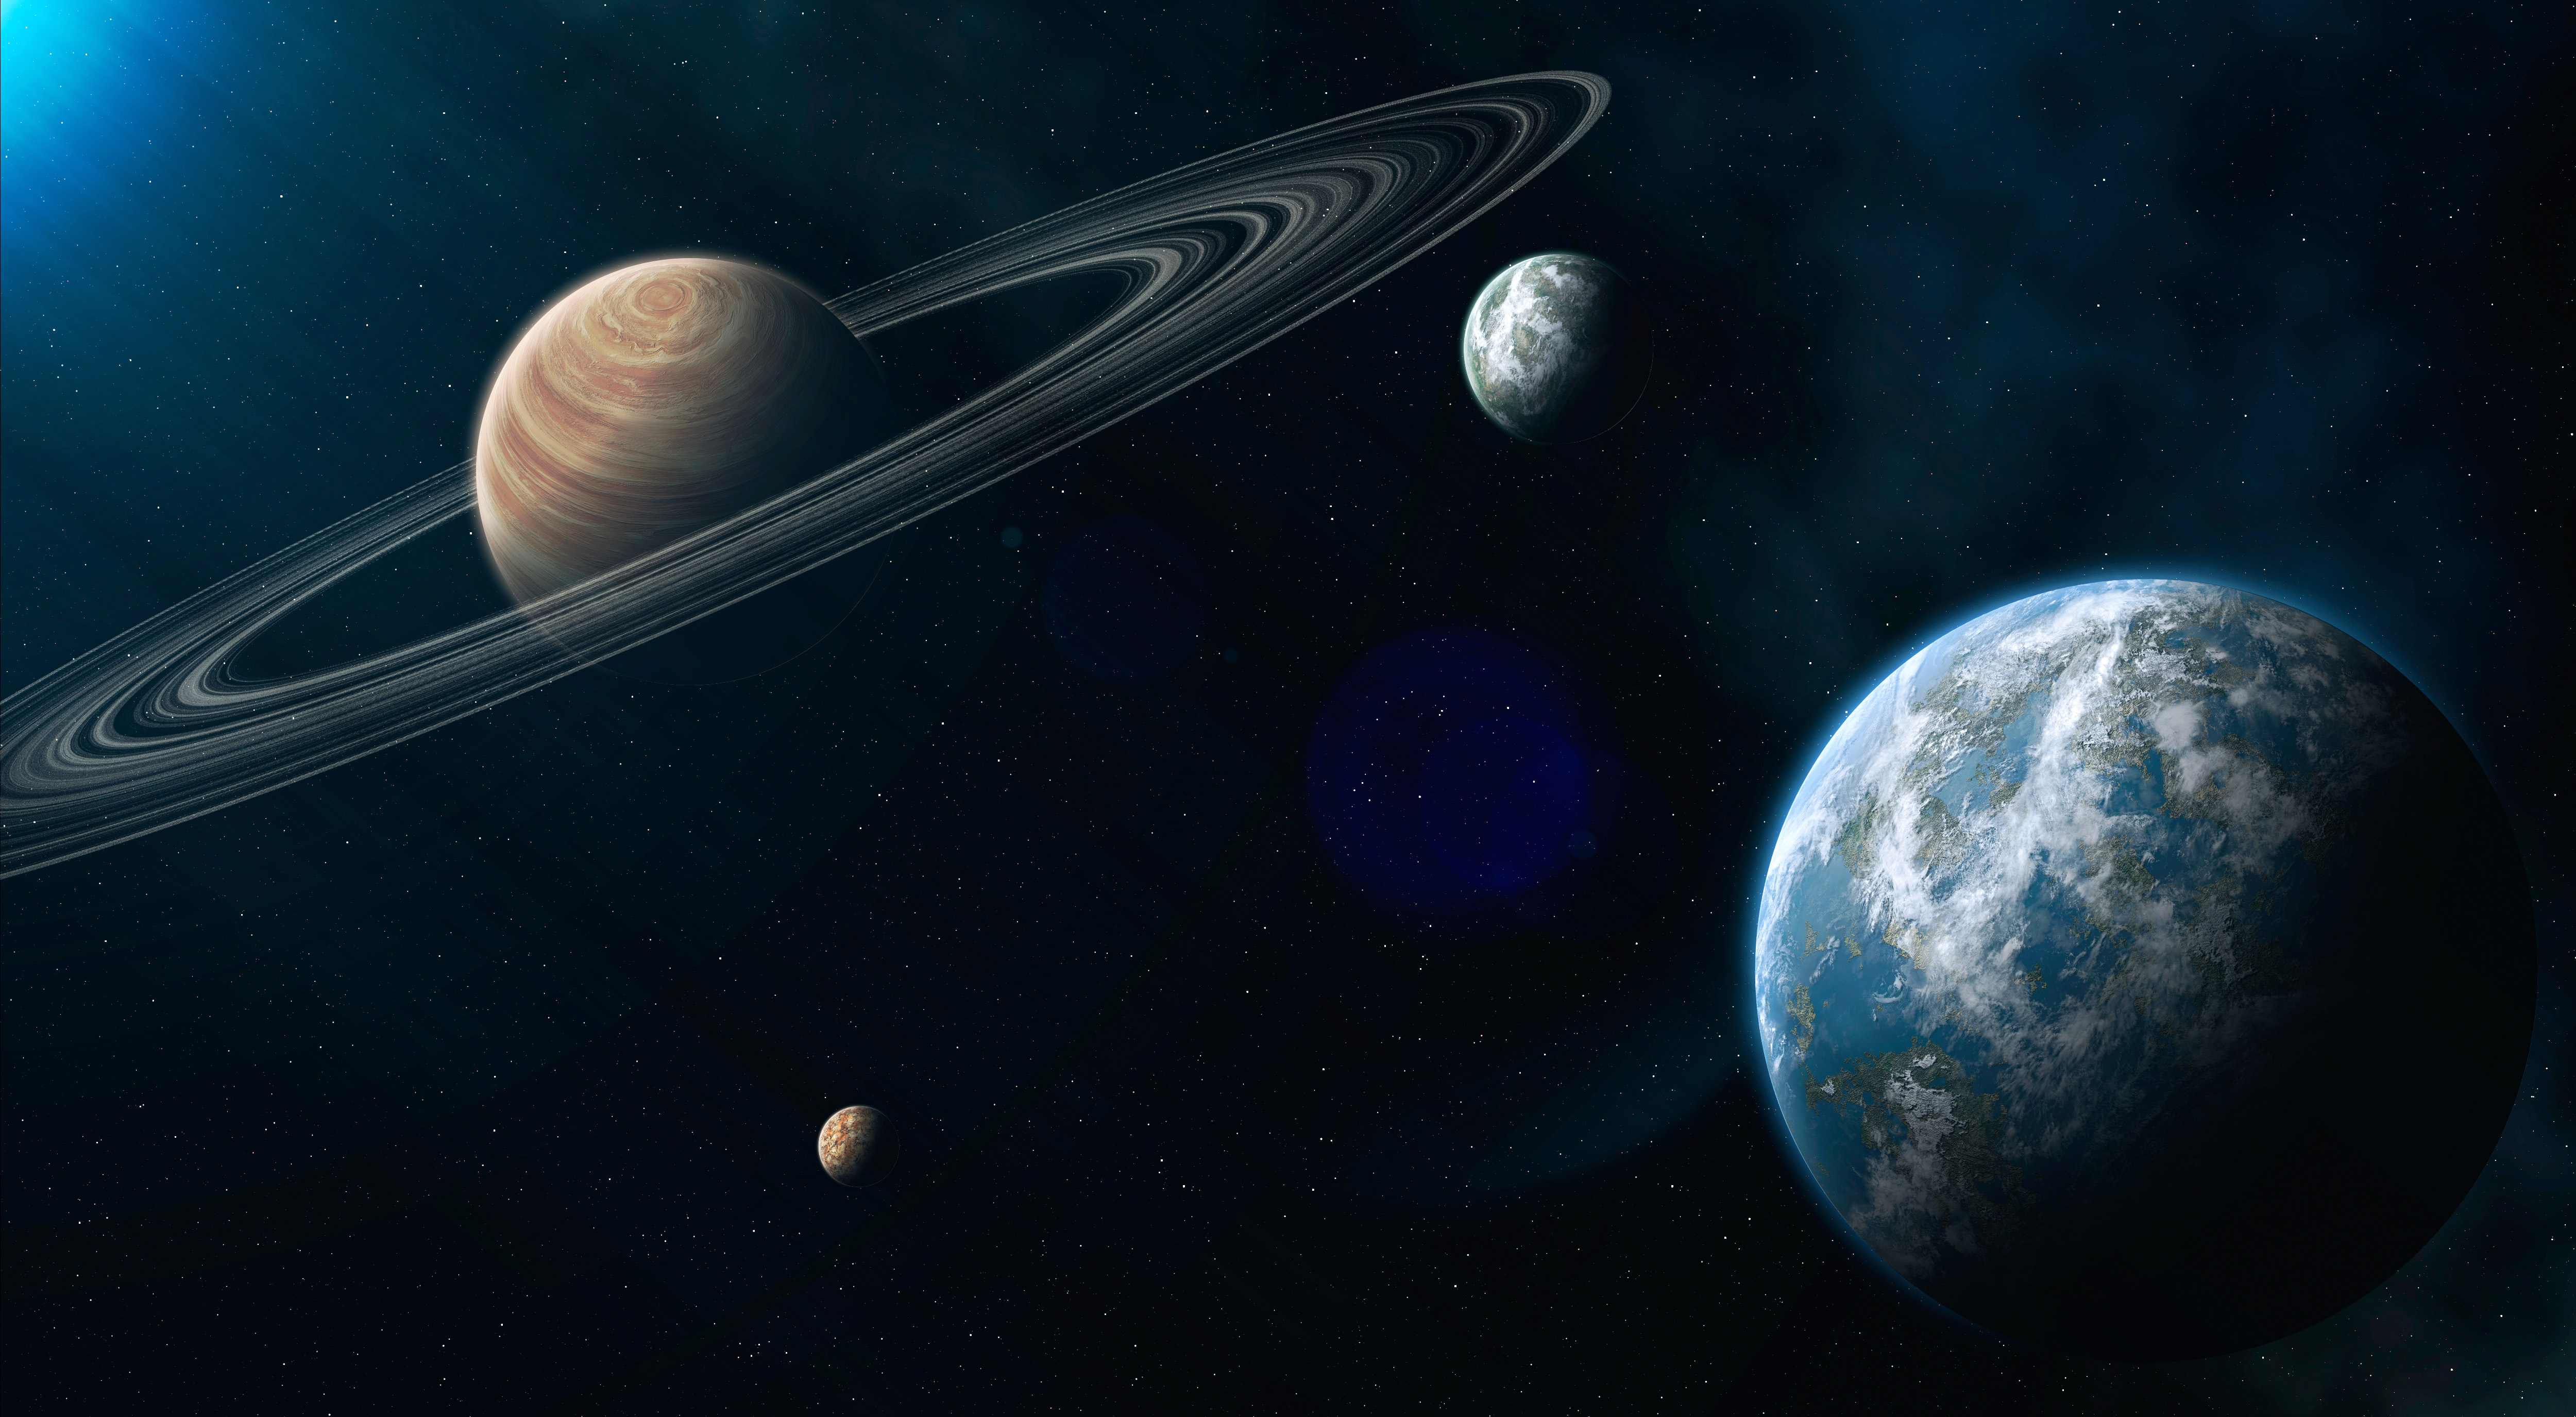 Обои Планета с кольцами звезды вид с земли спутники картинки на рабочий стол на тему Космос - скачать без смс